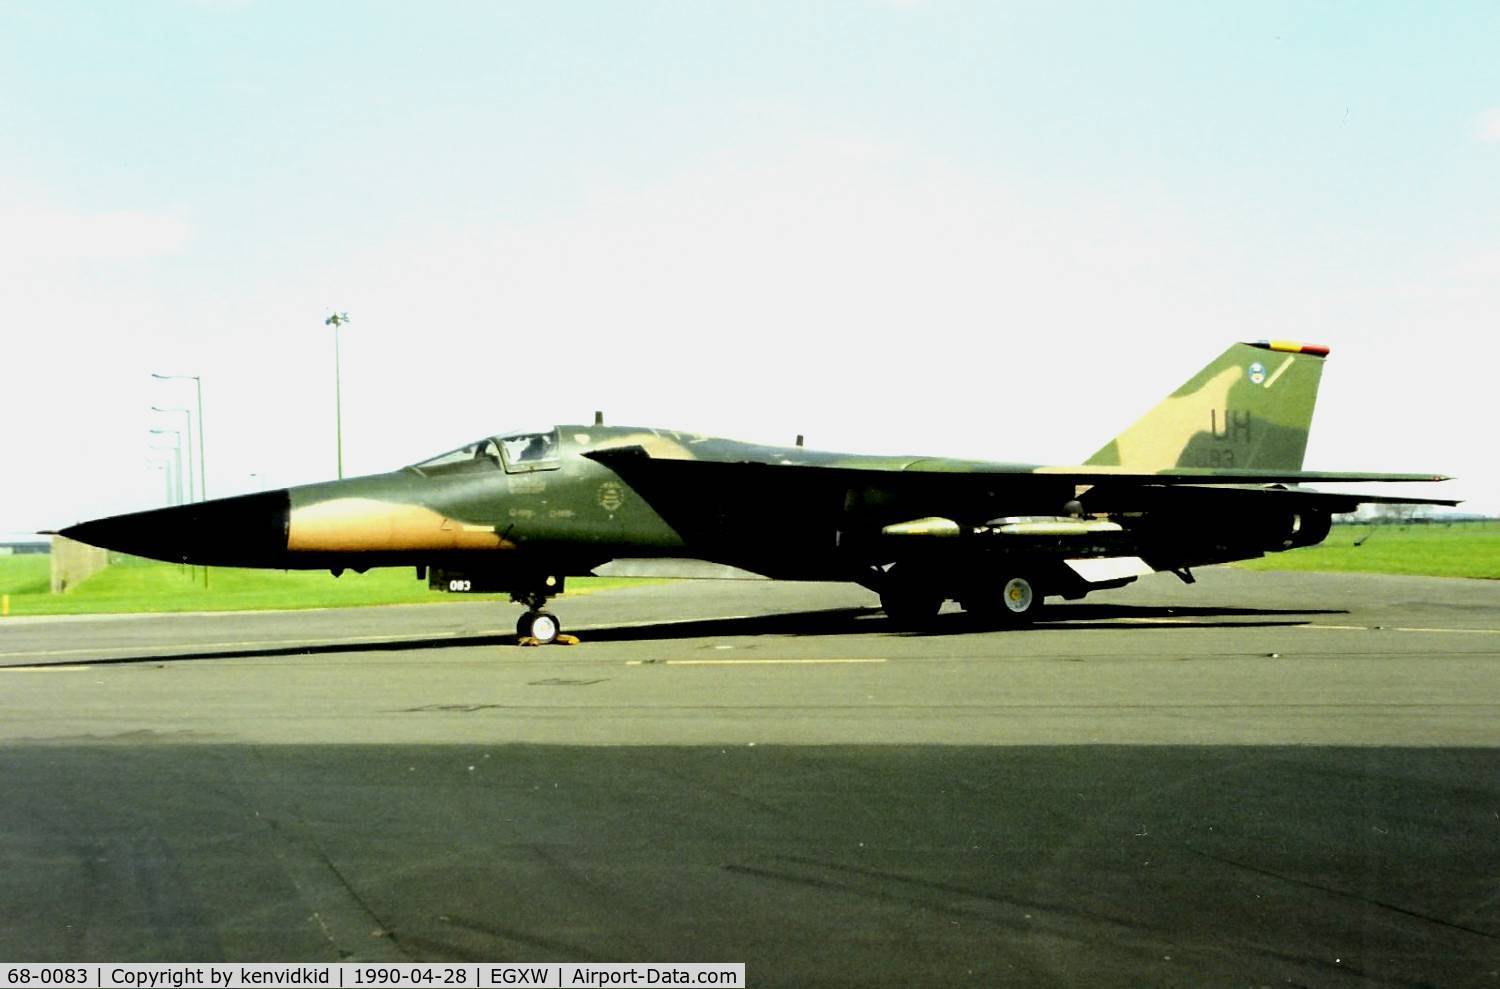 68-0083, 1968 General Dynamics F-111E Aardvark C/N A1-262, At the Waddington 1990 photocall.